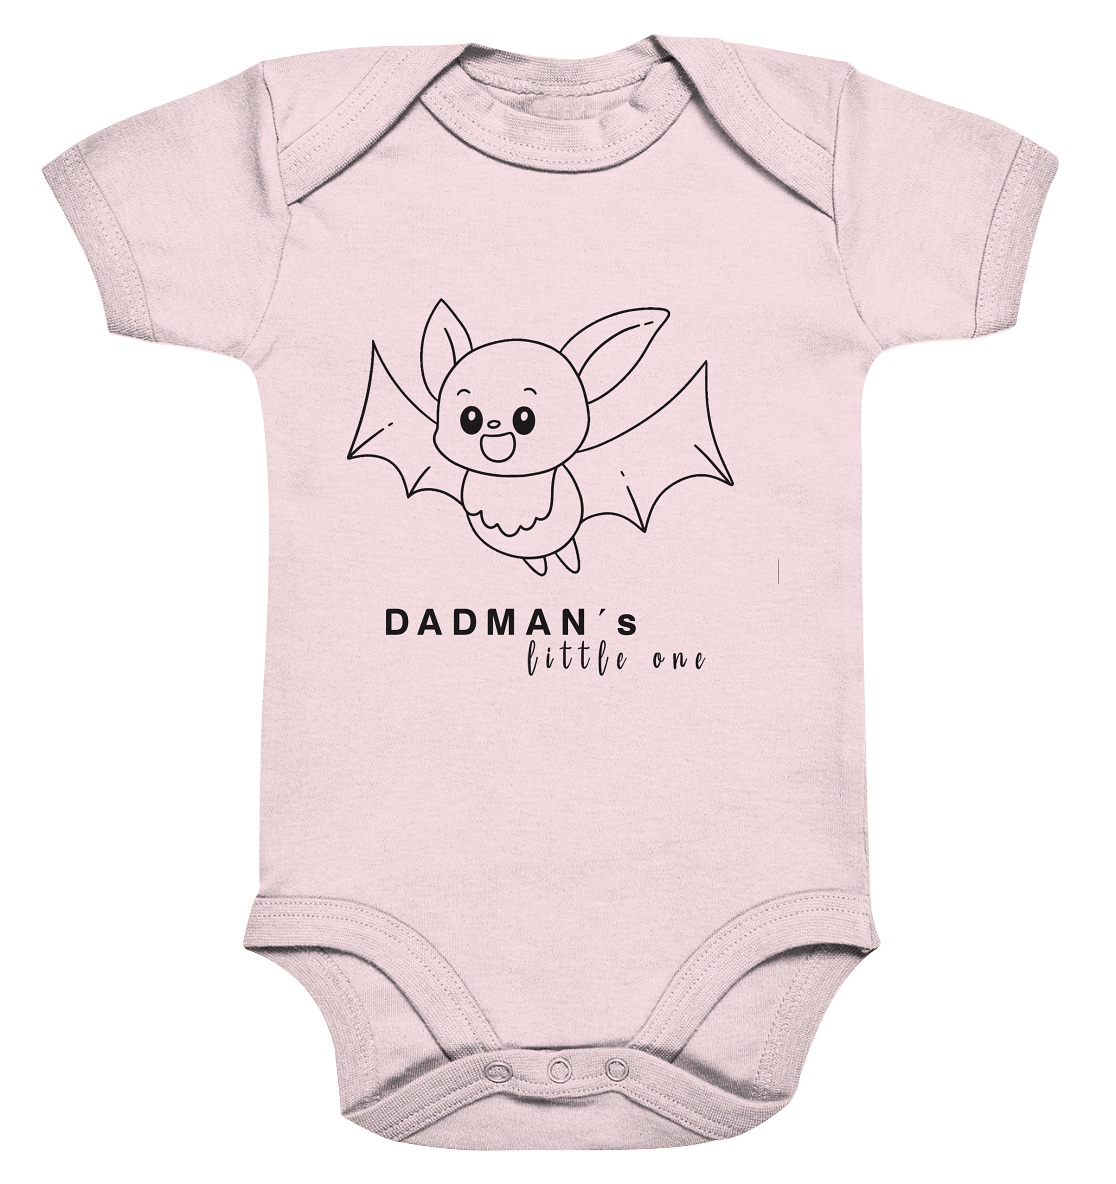 Dadman's little one - Organic Baby Bodysuite